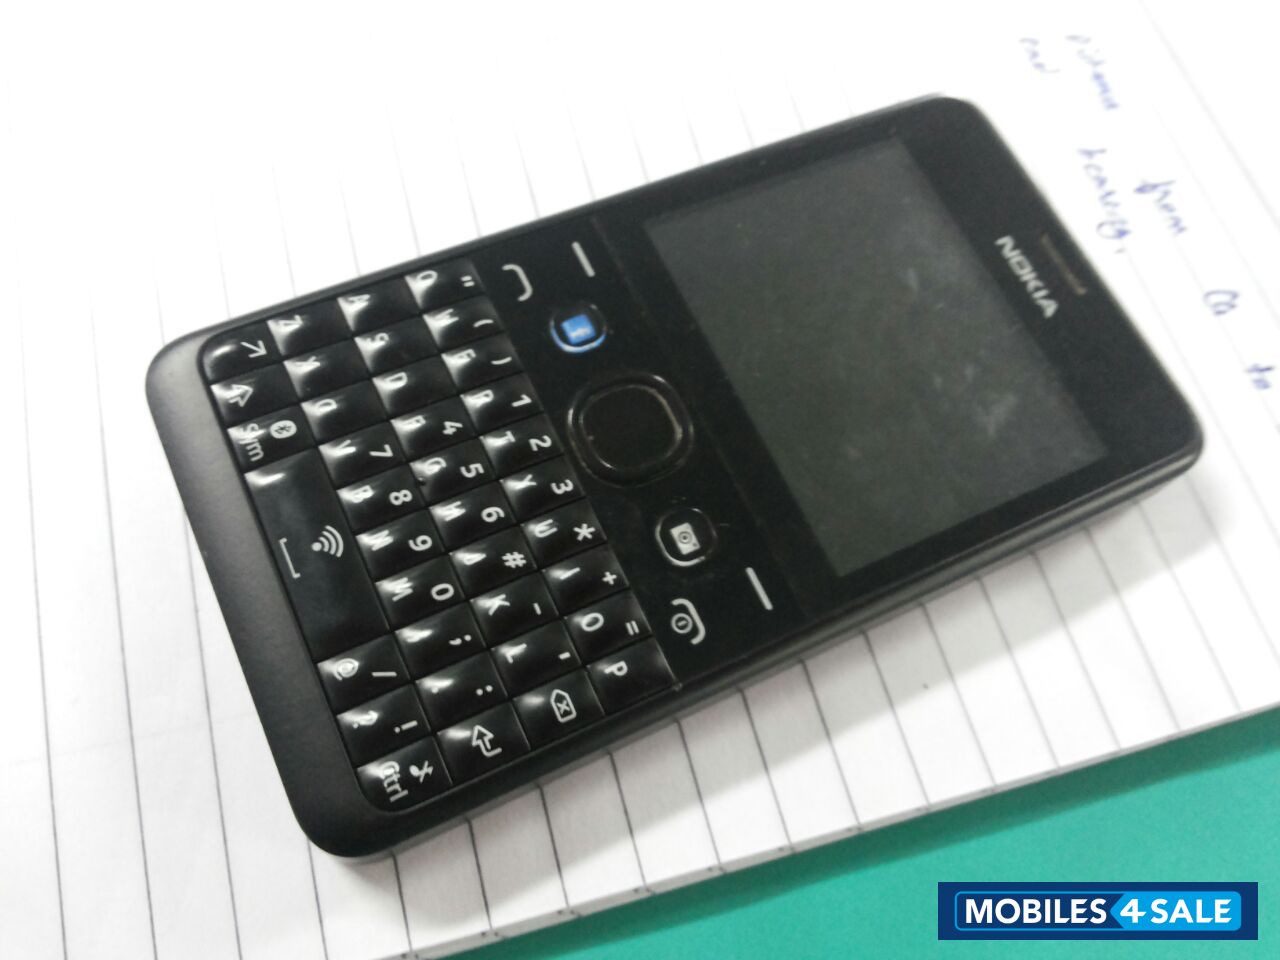 Nokia Asha 210: A Whatsapp Special Phone